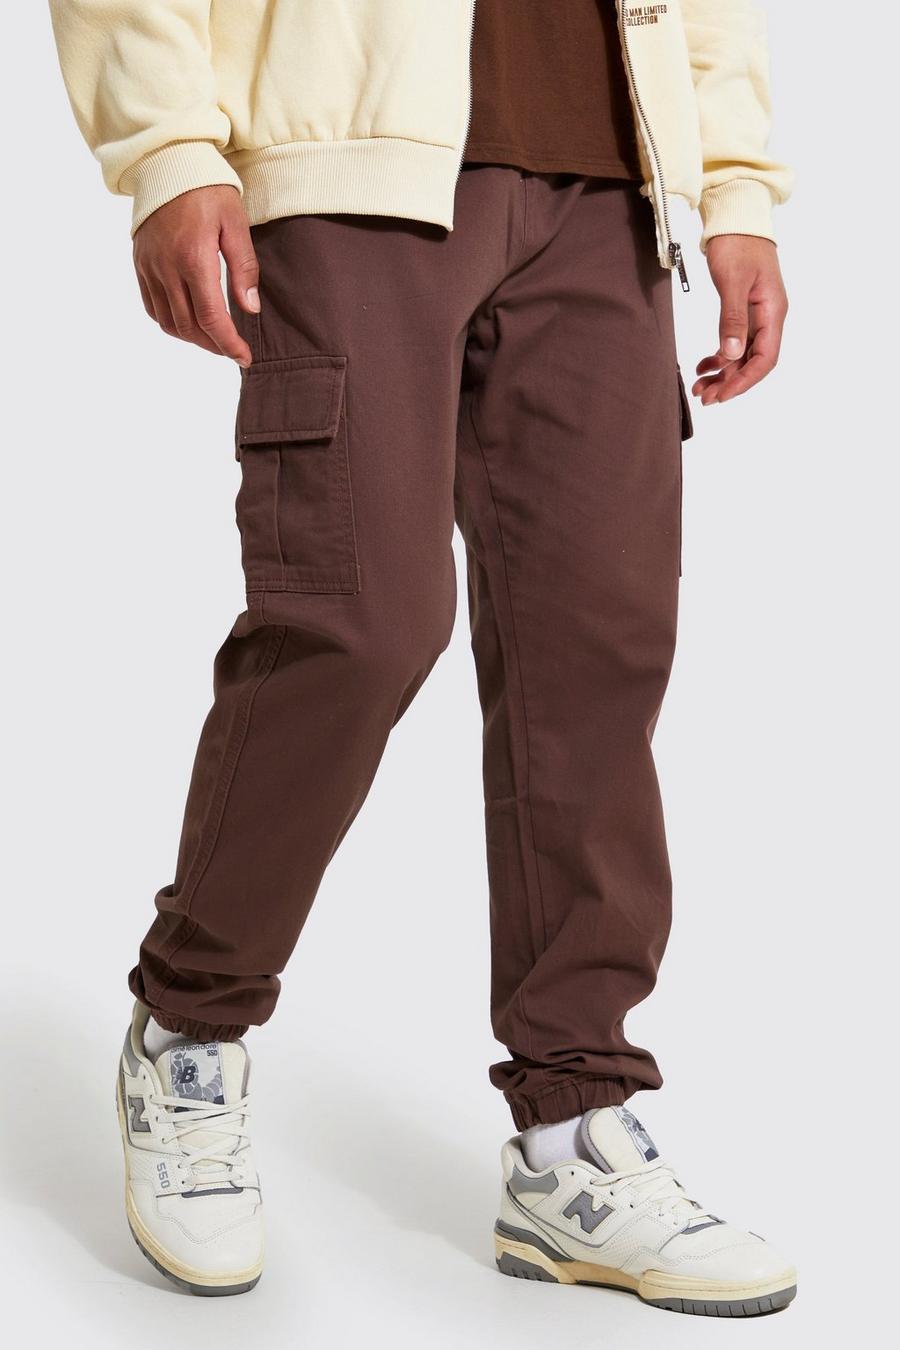 שוקולד marrón מכנסי דגמ"ח בגזרה צרה לגברים גבוהים image number 1